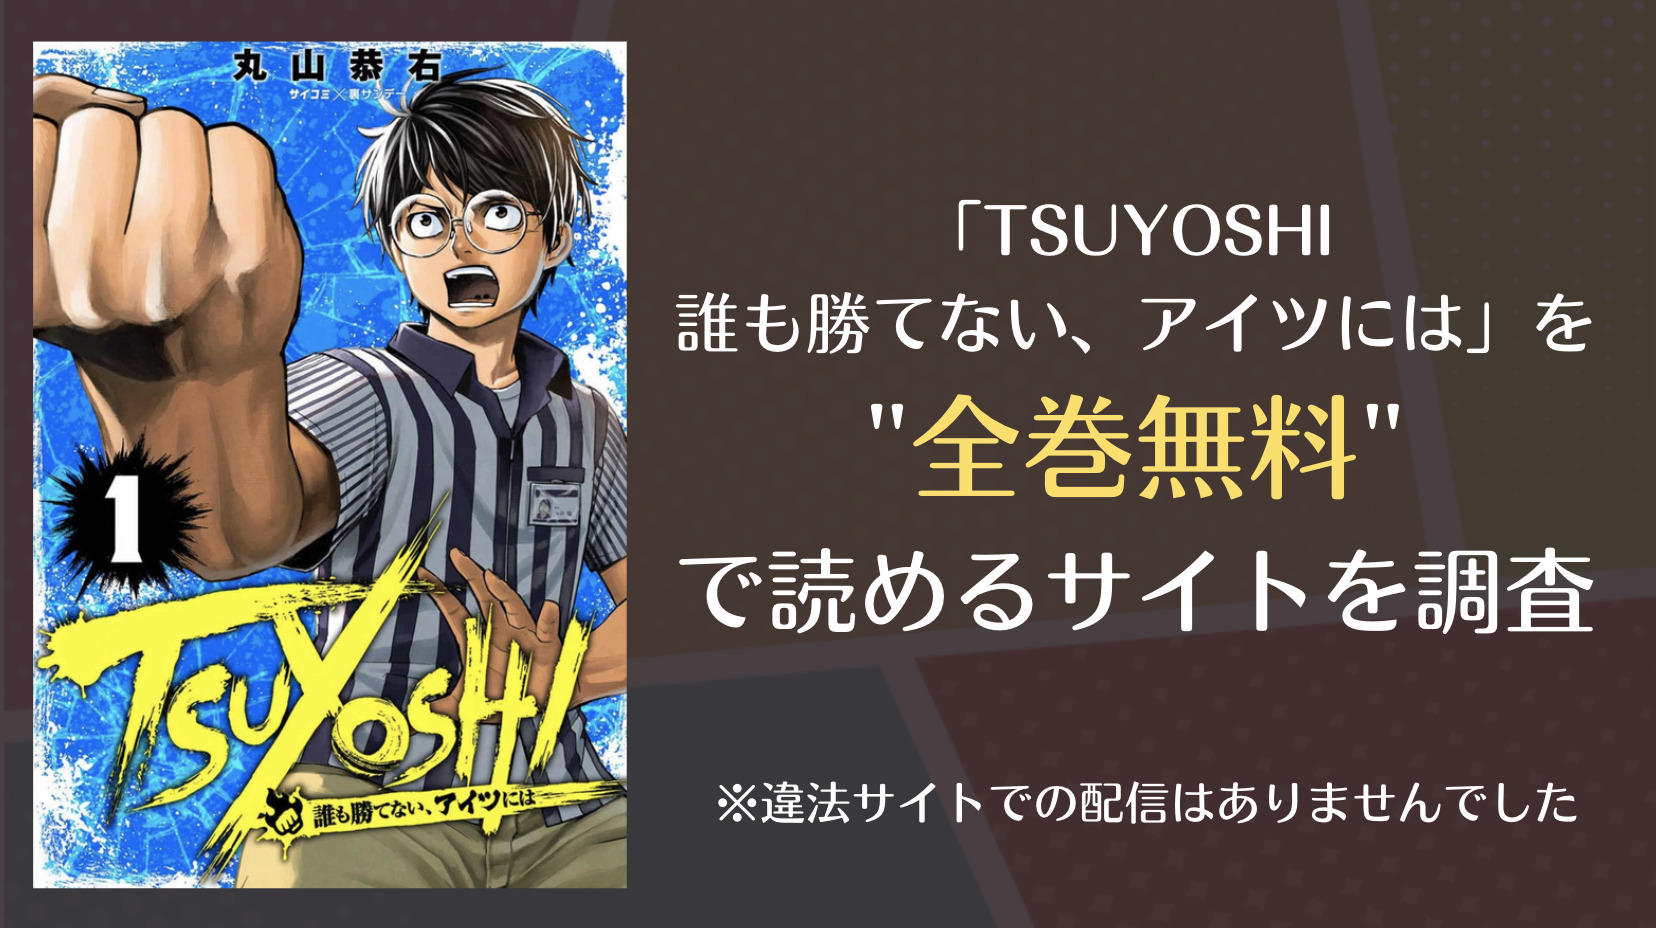 Tsuyoshi 誰も勝てない アイツには は漫画バンクやrawで全巻無料で読める 漫画 電子コミック情報サイトcomifo コミフォ